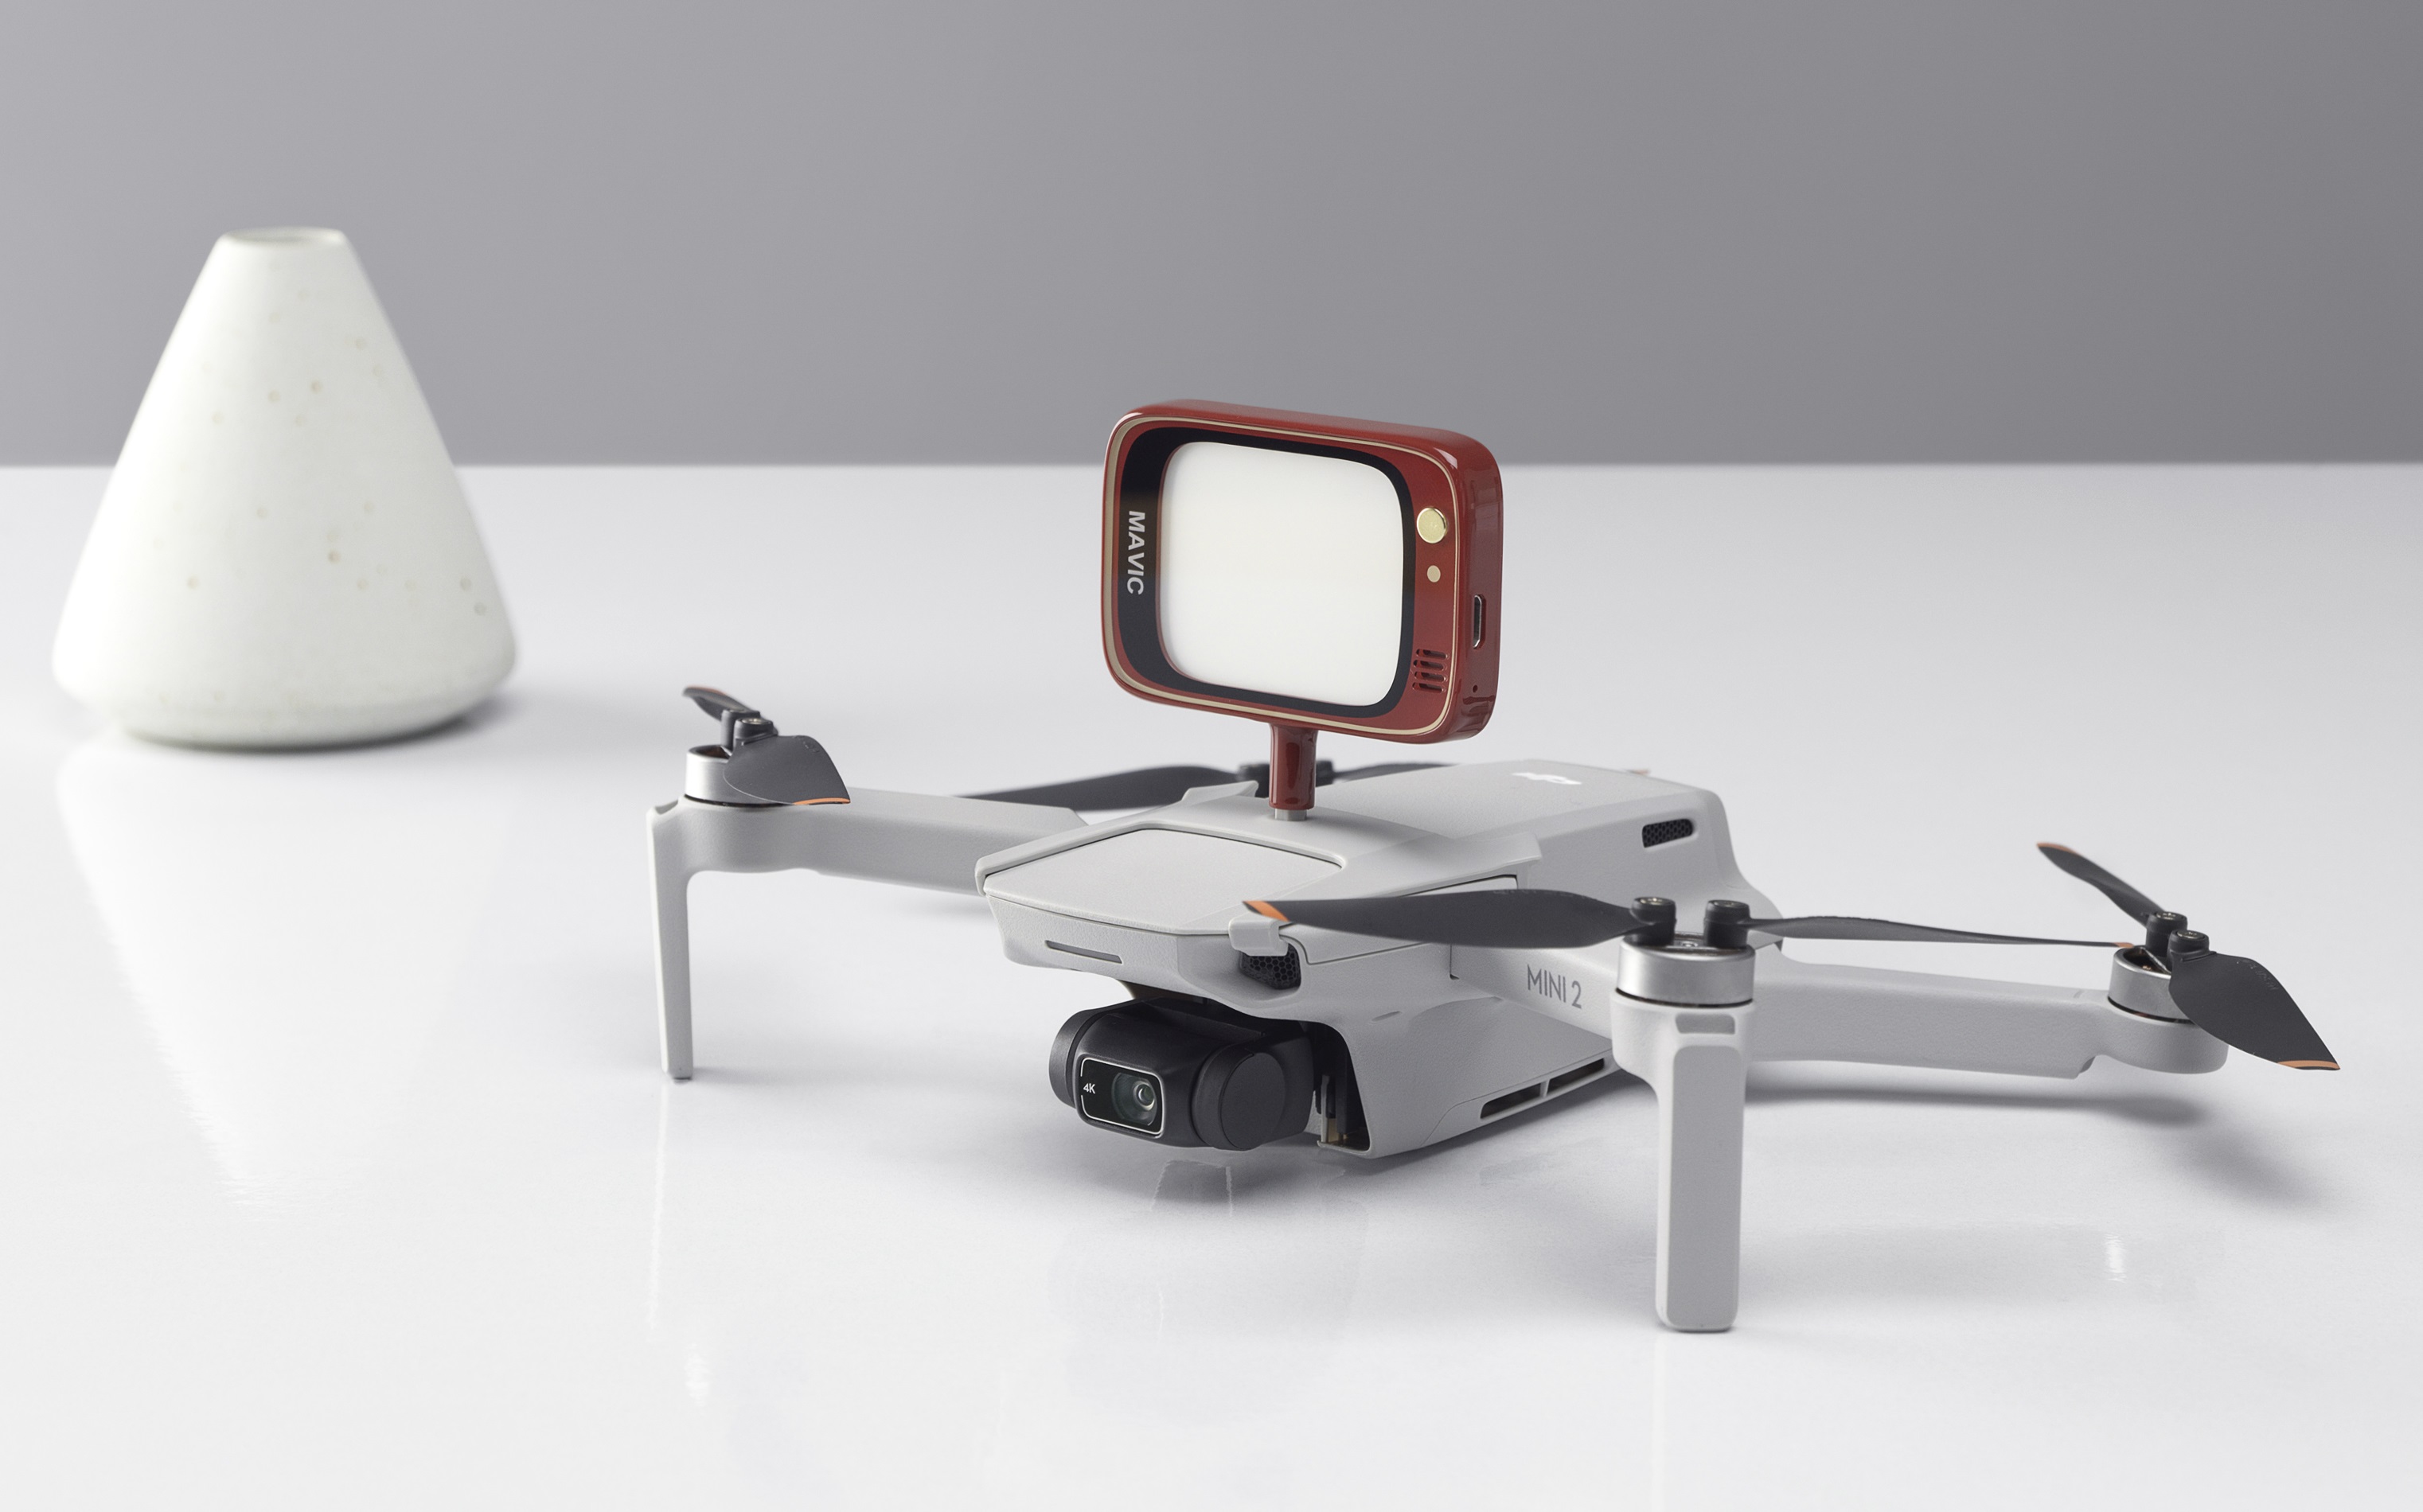 Reseña de primera impresión del dron DJI Mini 2: Video 4K, OcuSync 2.0 y el  mismo cuerpo ultraliviano